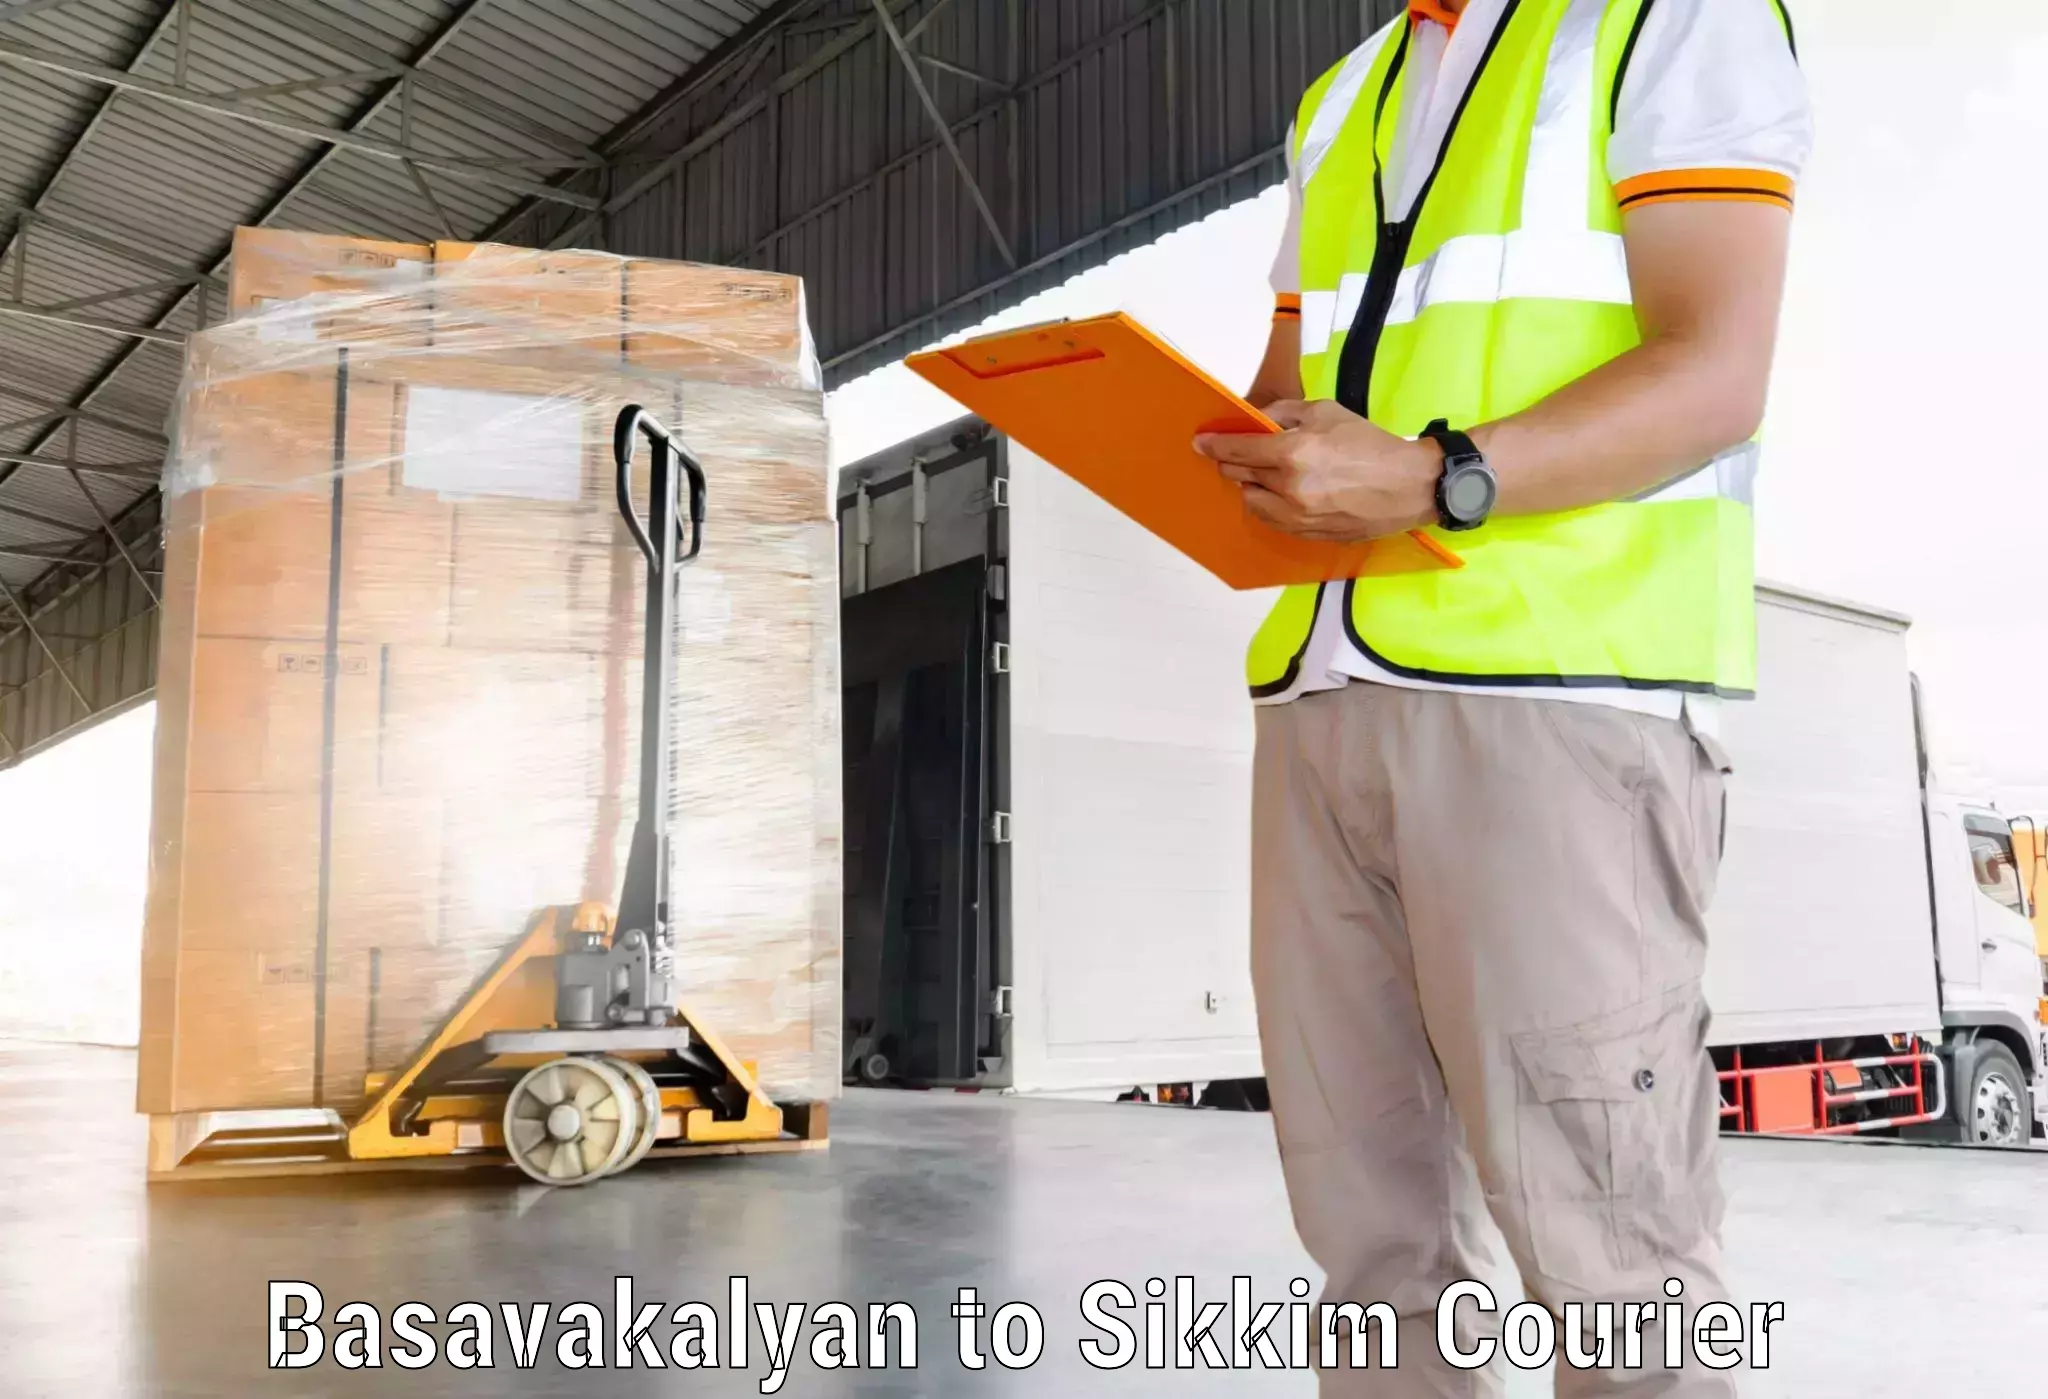 Seamless shipping experience Basavakalyan to Mangan